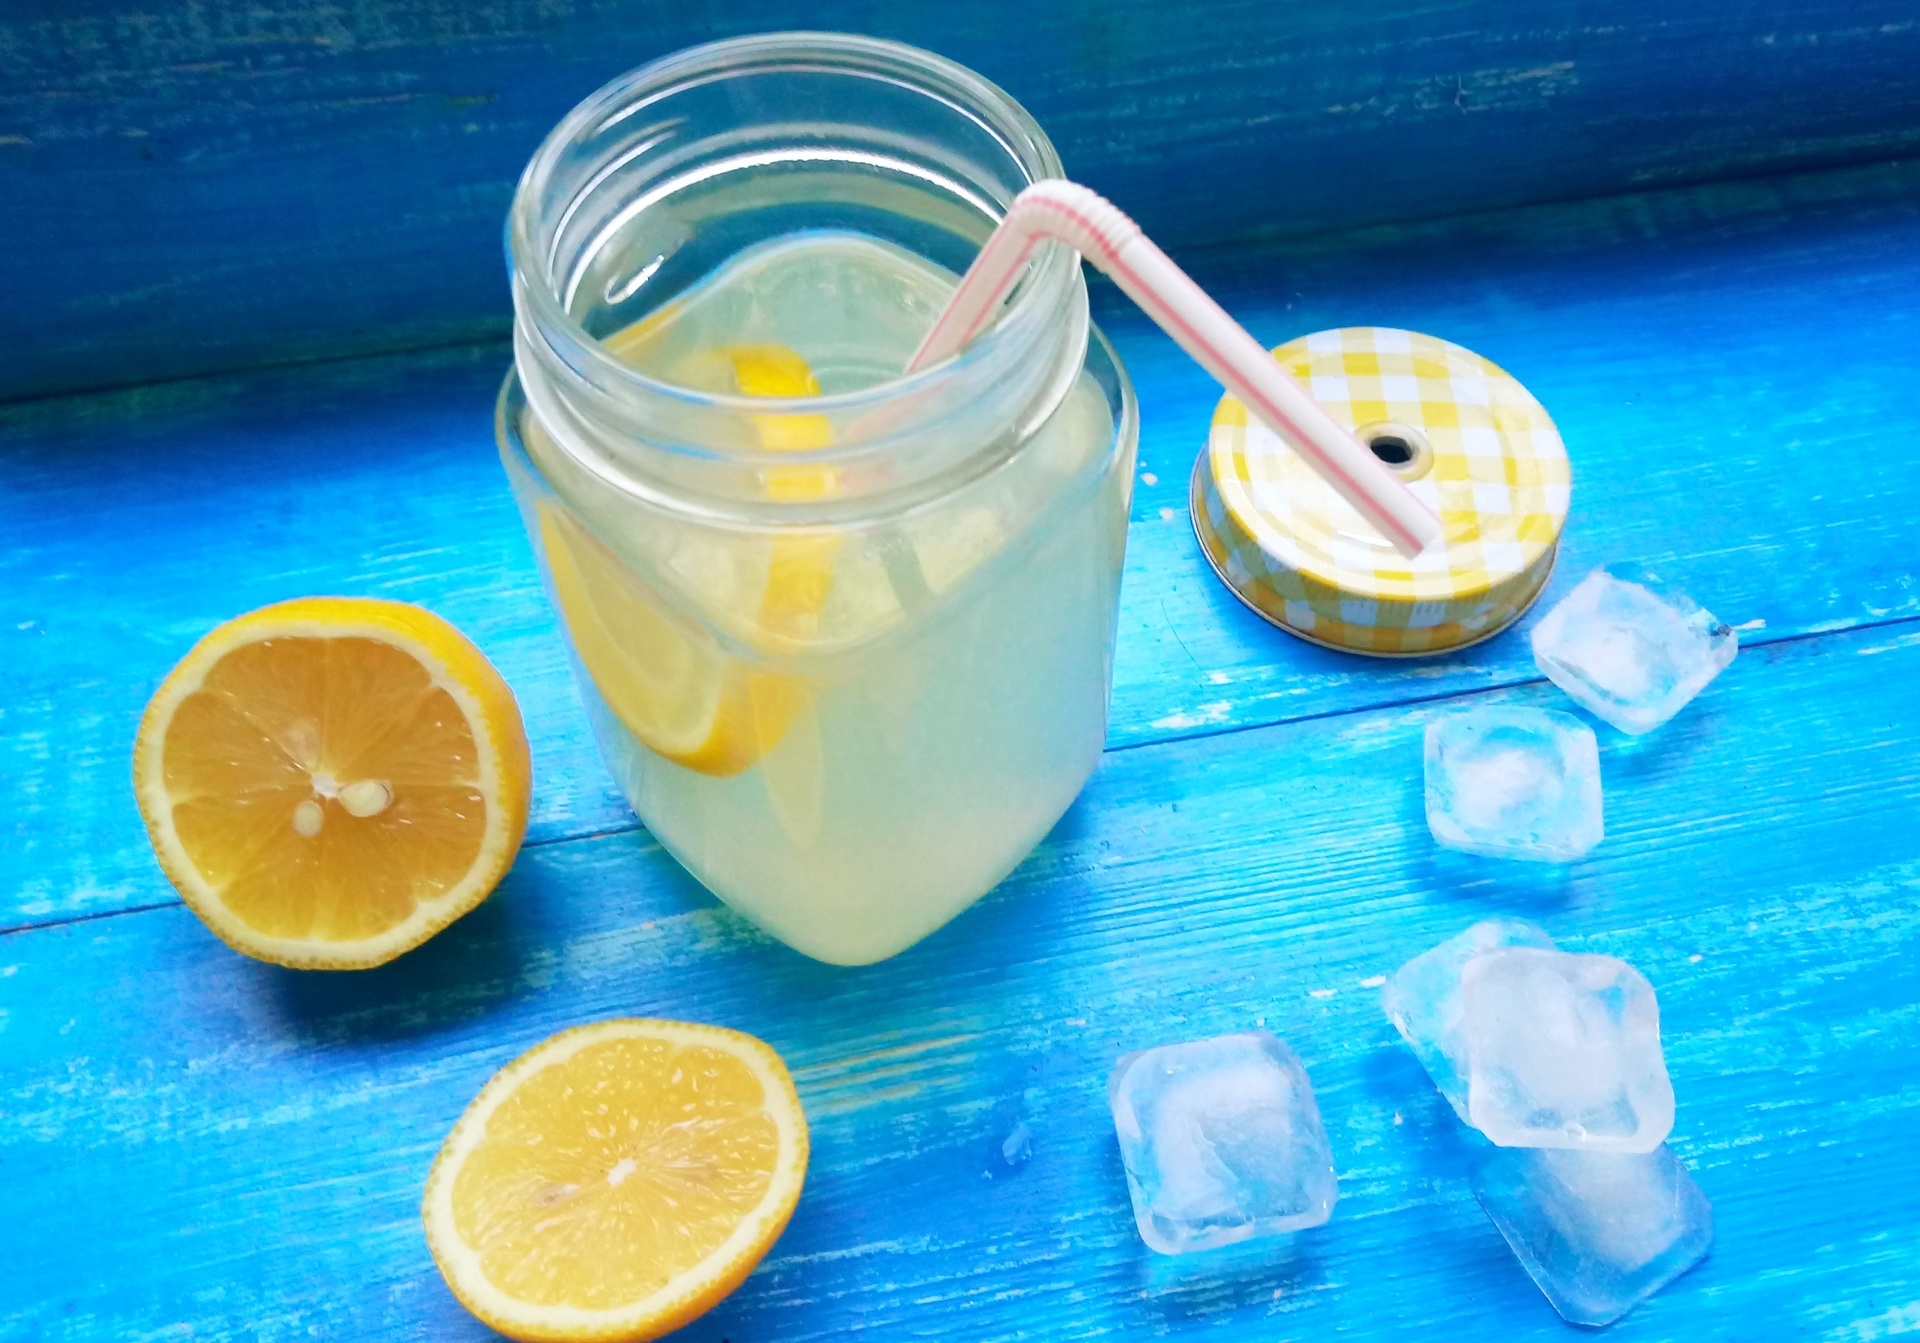 Вода лимон сахар лимонад. Прохладительные напитки. Лимон с сахаром. Лимонад домашний из сахара воды и лимона. Лимонный сок с сахаром.